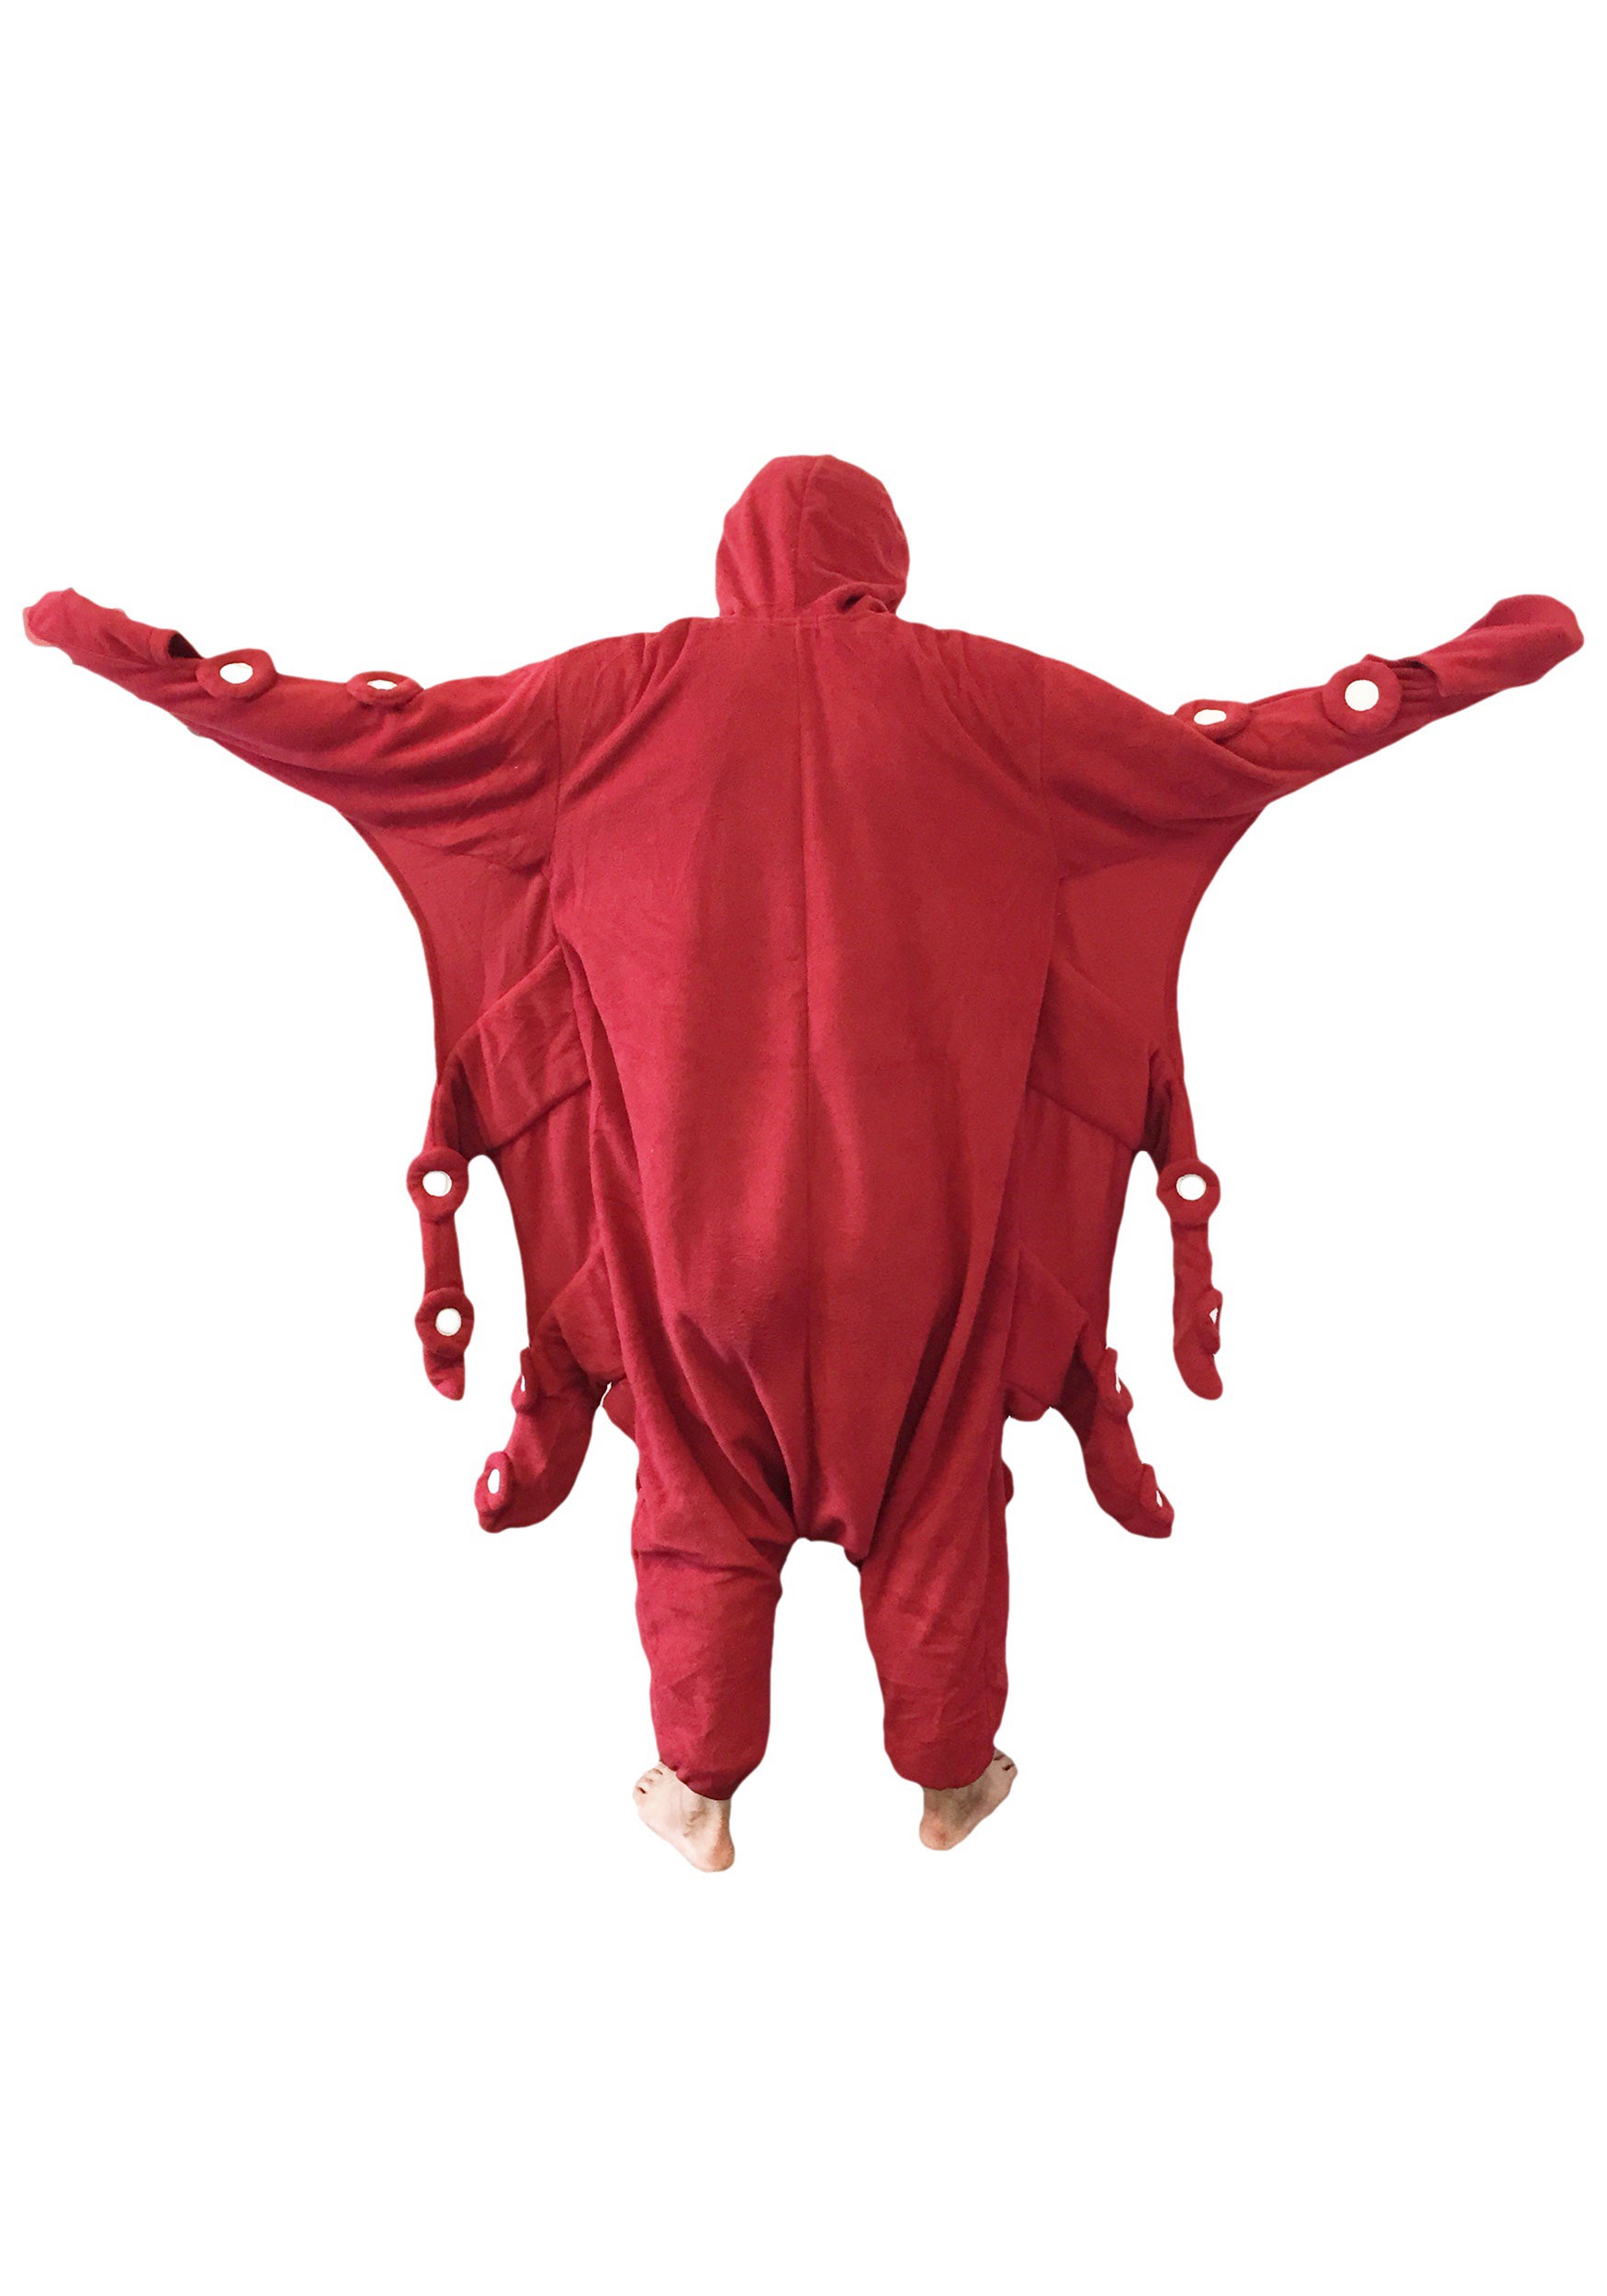 Disfraz de Pulpo rojo para adultos